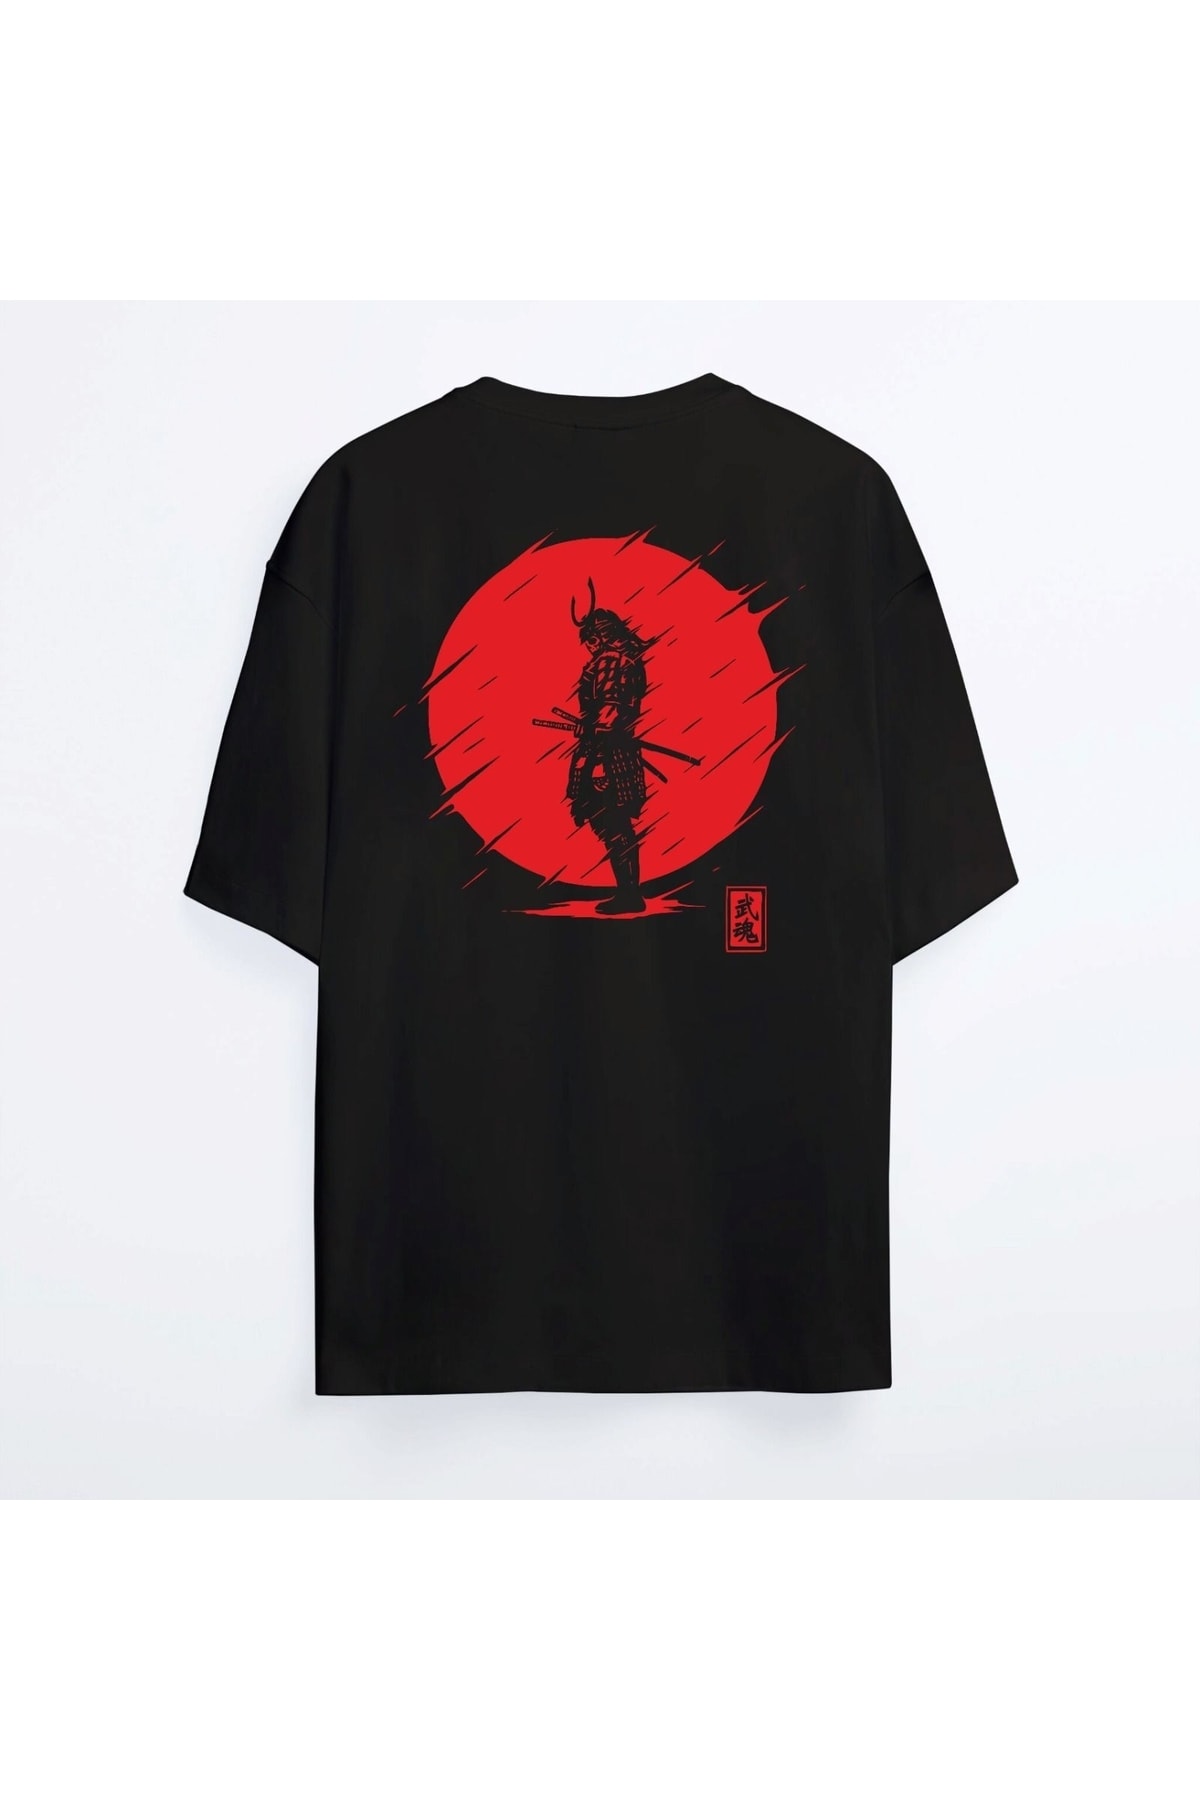 Shout Oversize Samurai Oldschool Unisex T-shirt PG7481